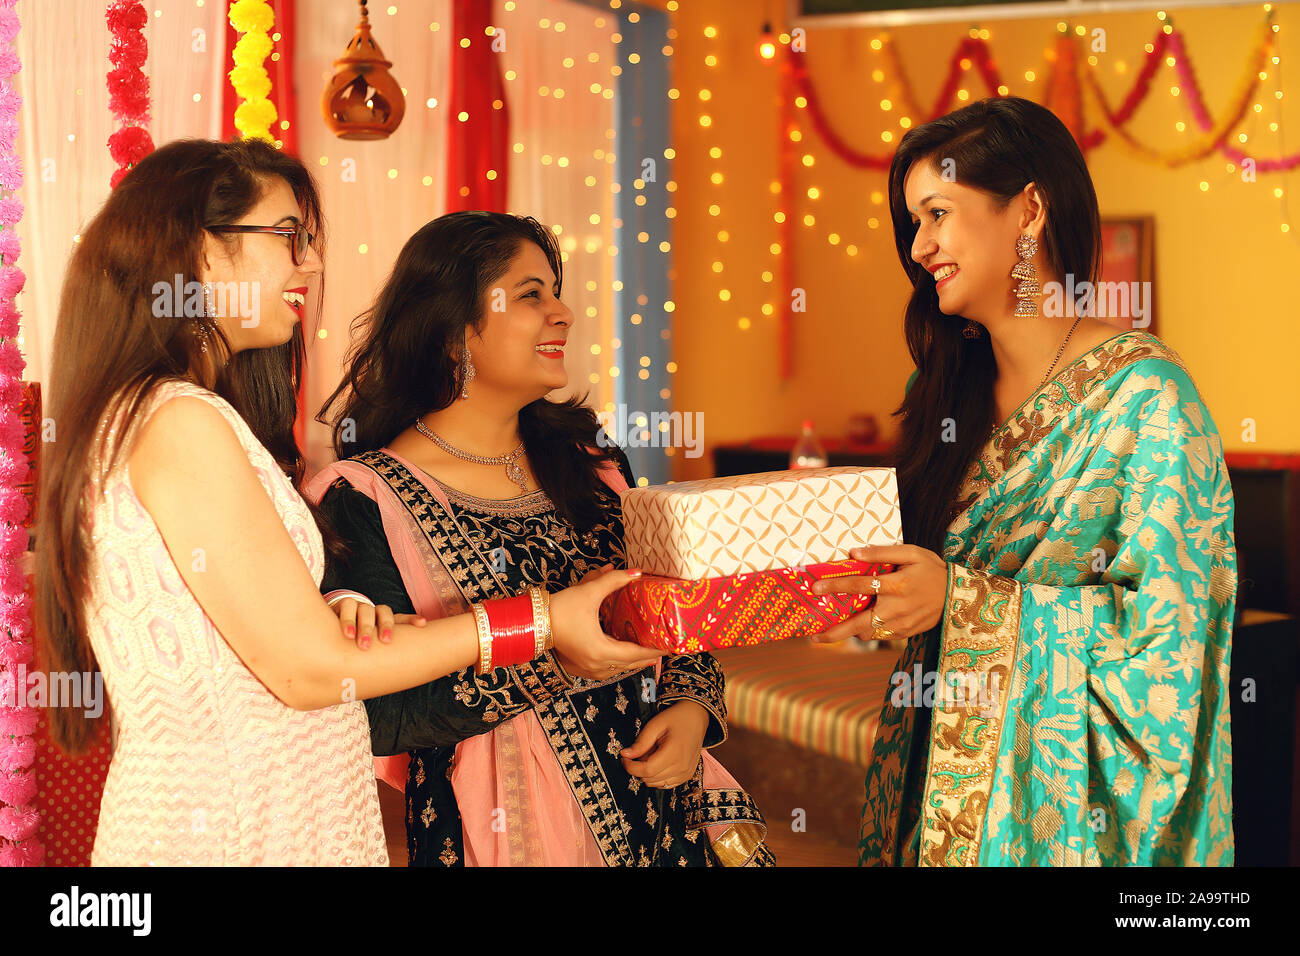 Jolies jeunes femmes indiennes portant des vêtements ethniques traditionnels cadeau donner à une femme, plus de flou d'arrière-plan de fête. Banque D'Images